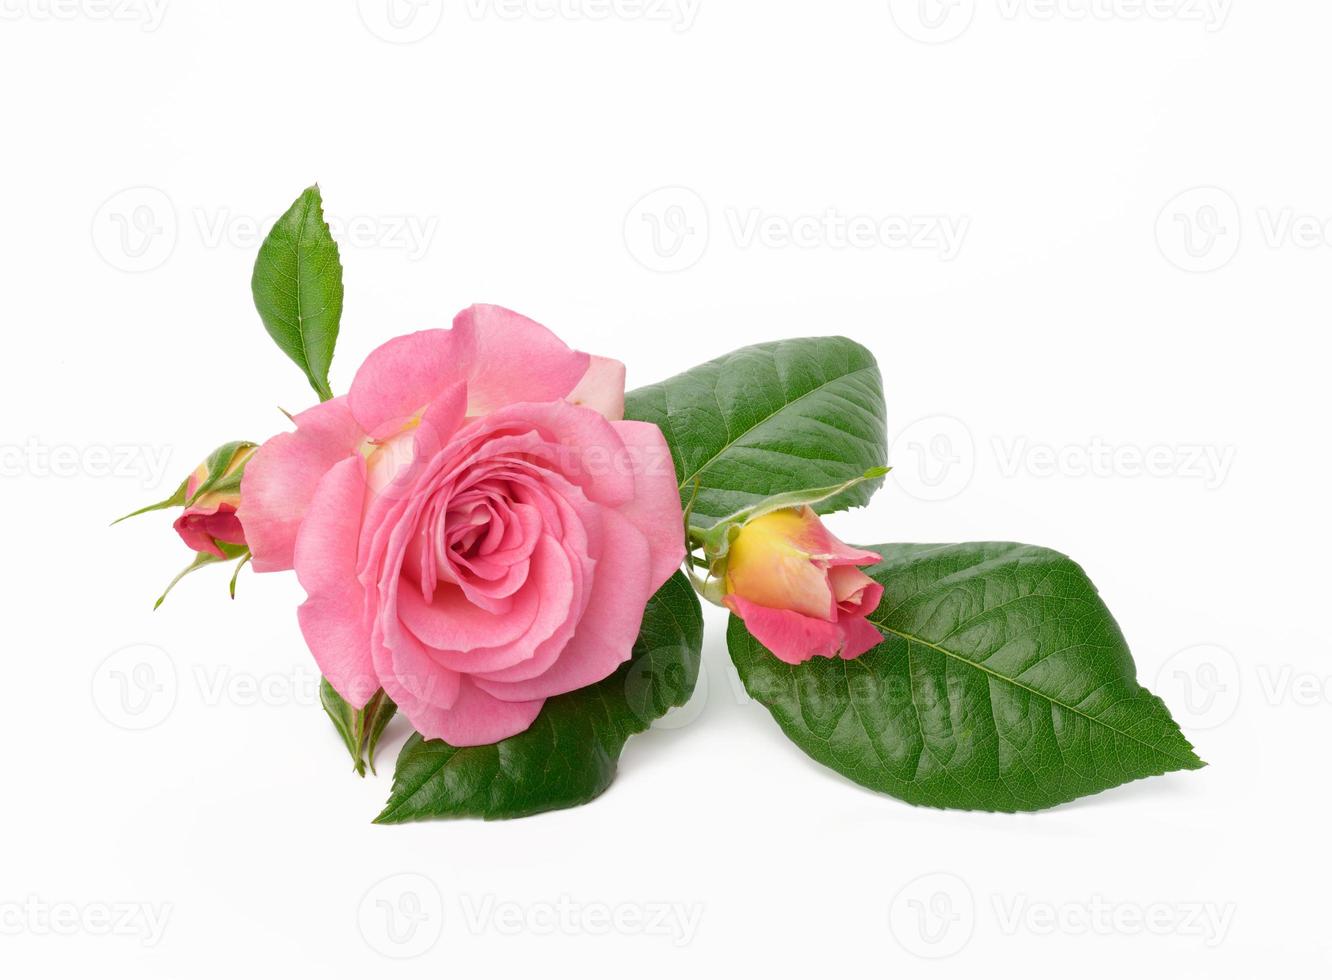 blomning rosa reste sig knopp med grön löv på en vit bakgrund, skön blomma foto